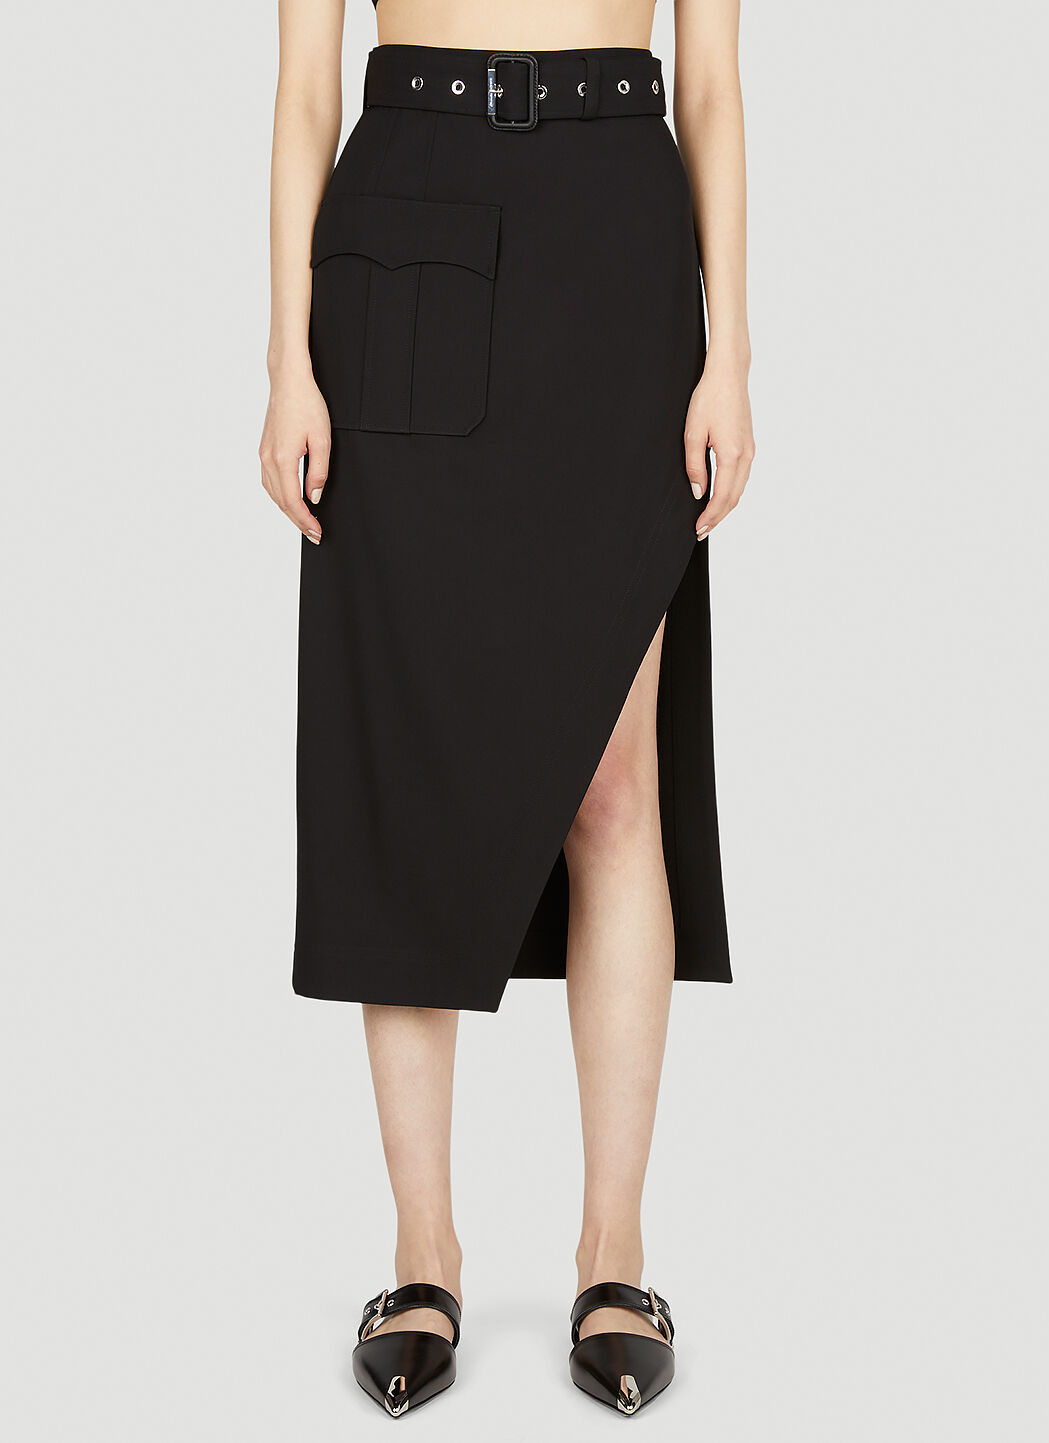 Alexander McQueen Belted Skirt Black amq0252012